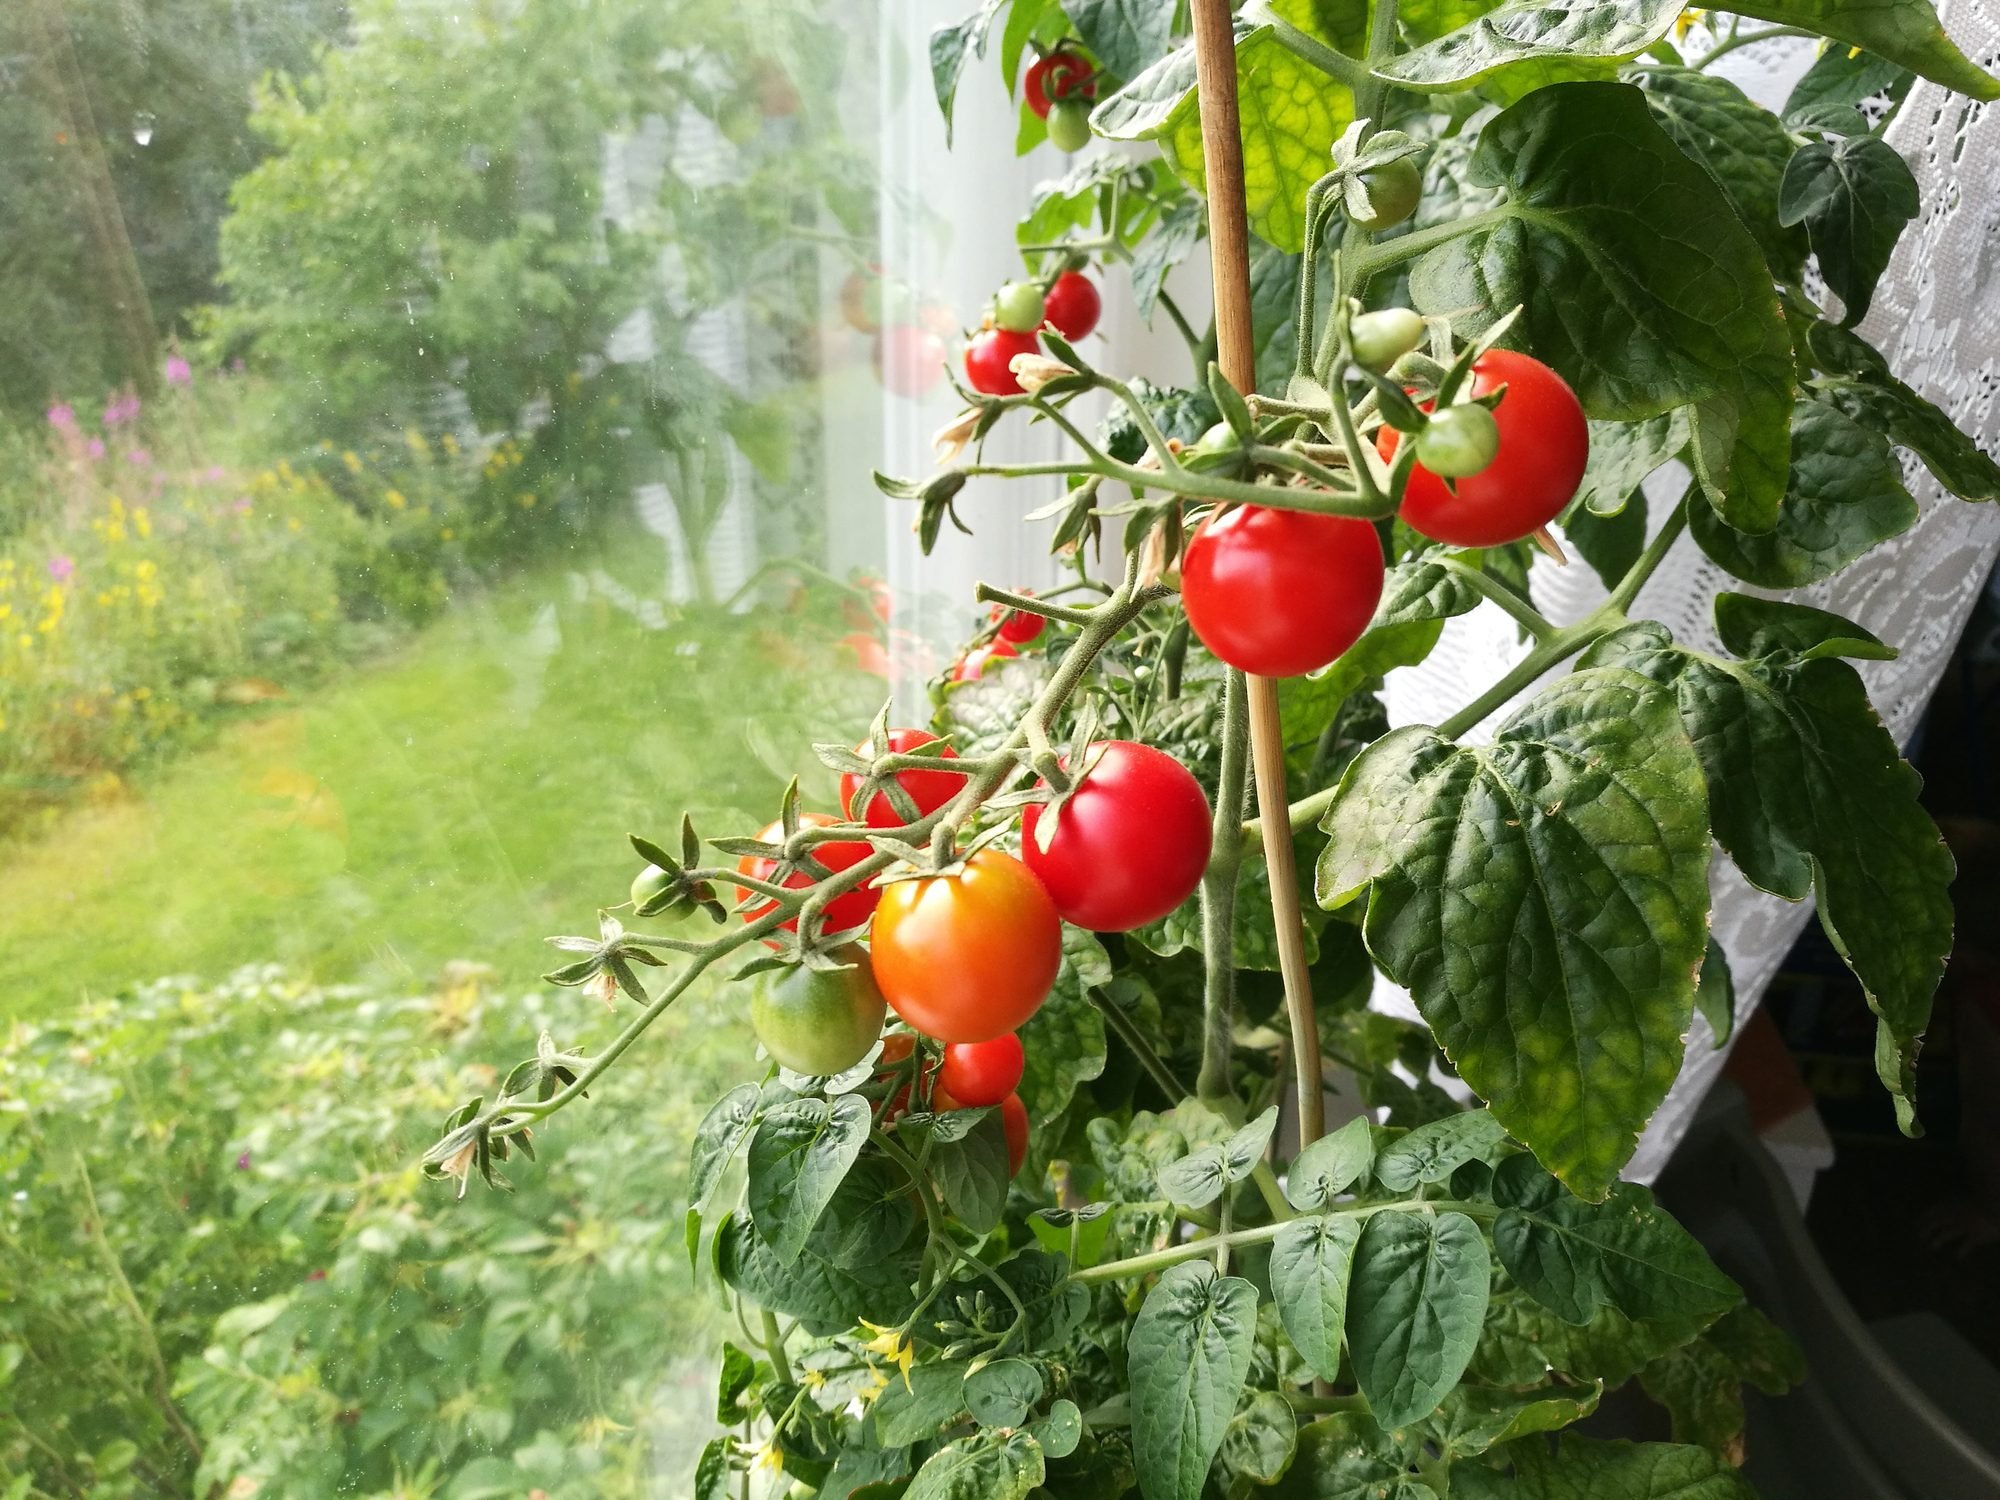 Los 5 mejores consejos para cultivar tomates en interiores (de un experto en tomates)